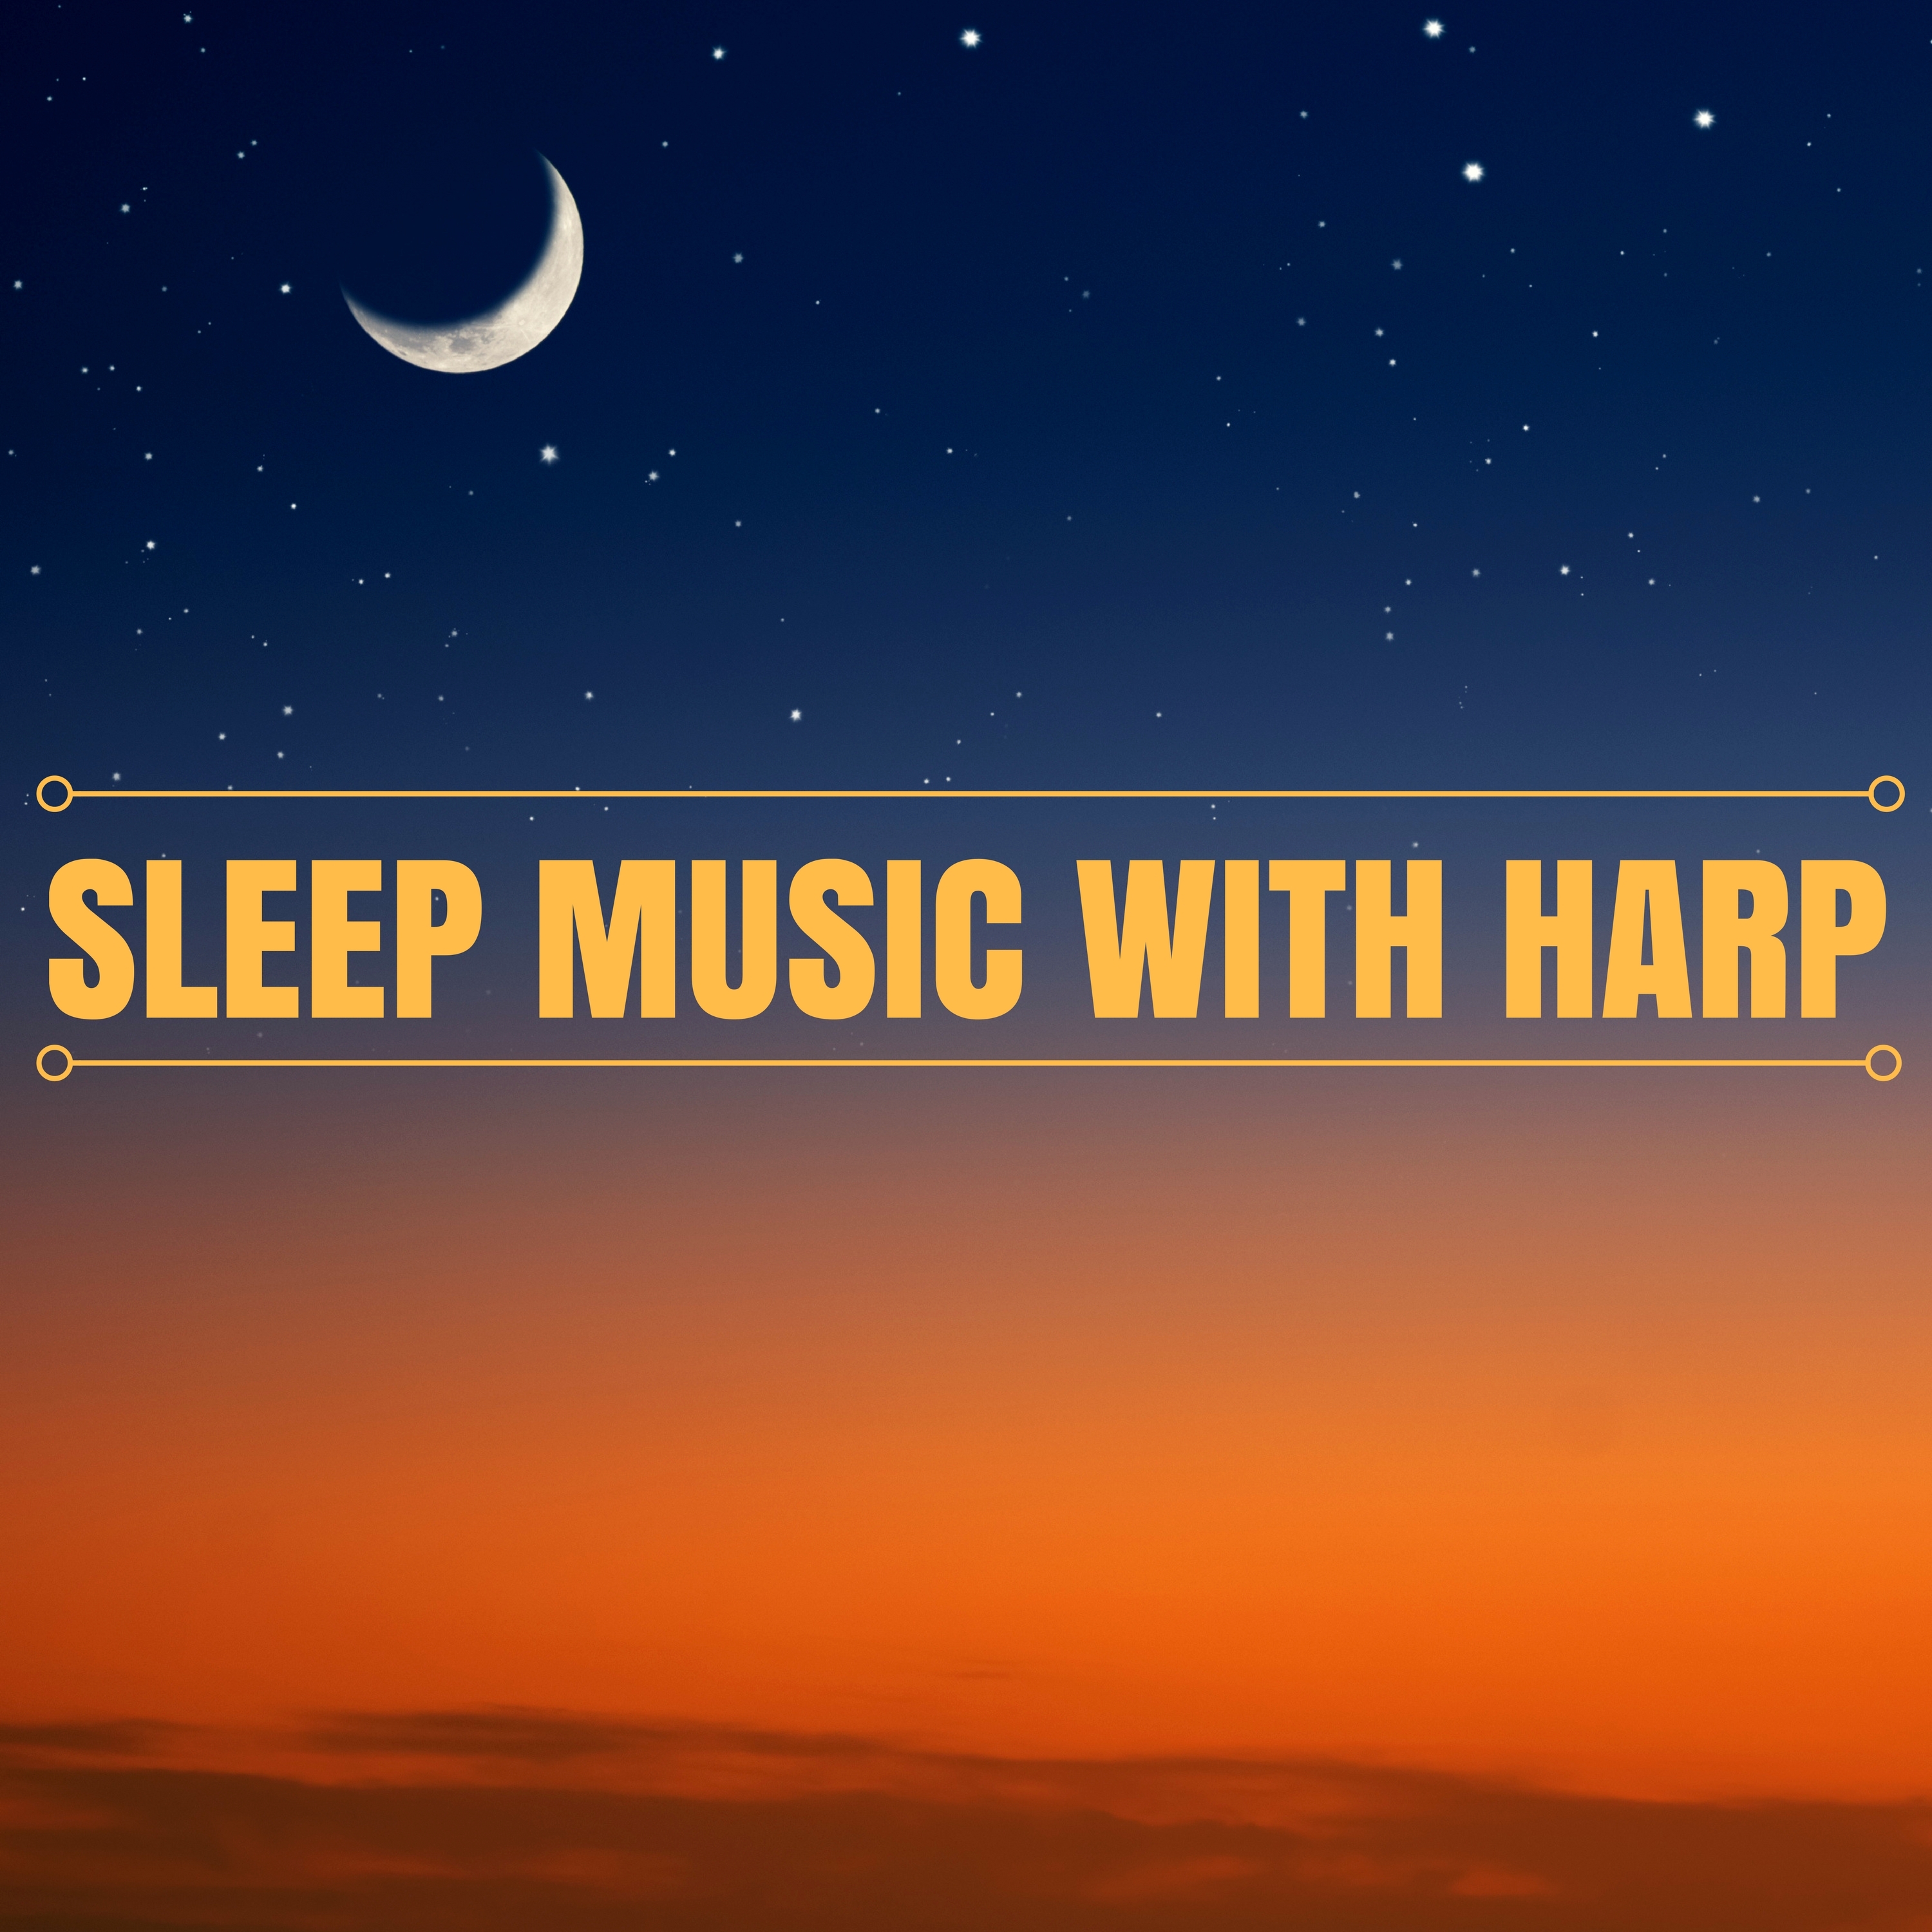 Harp of Good Night